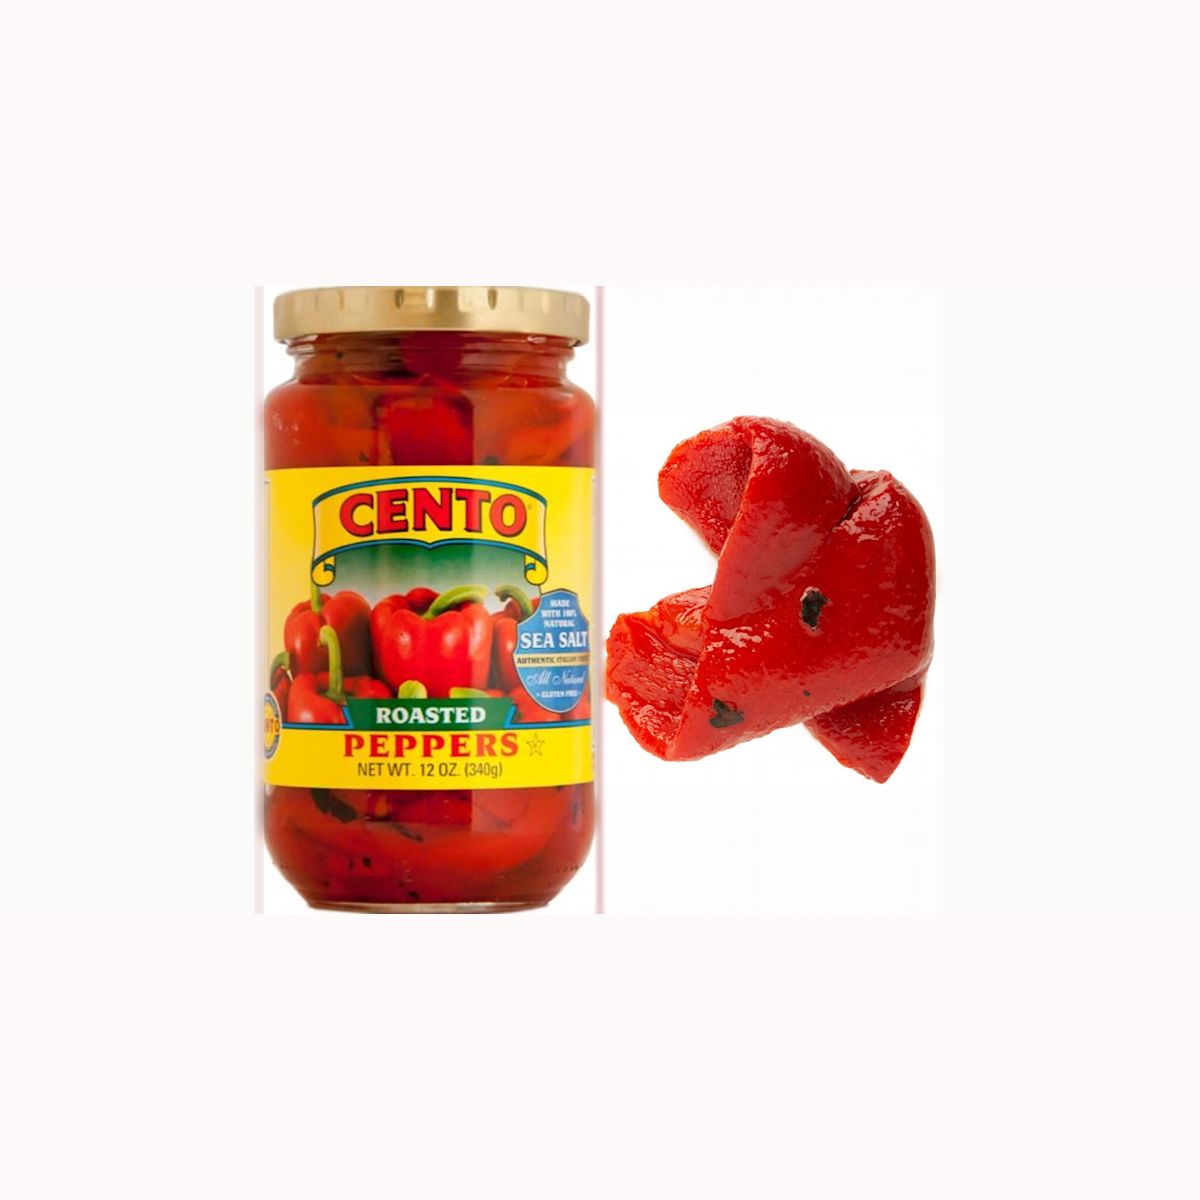 Red Bell Pepper Halves, 1kg – Hightower, Inc.